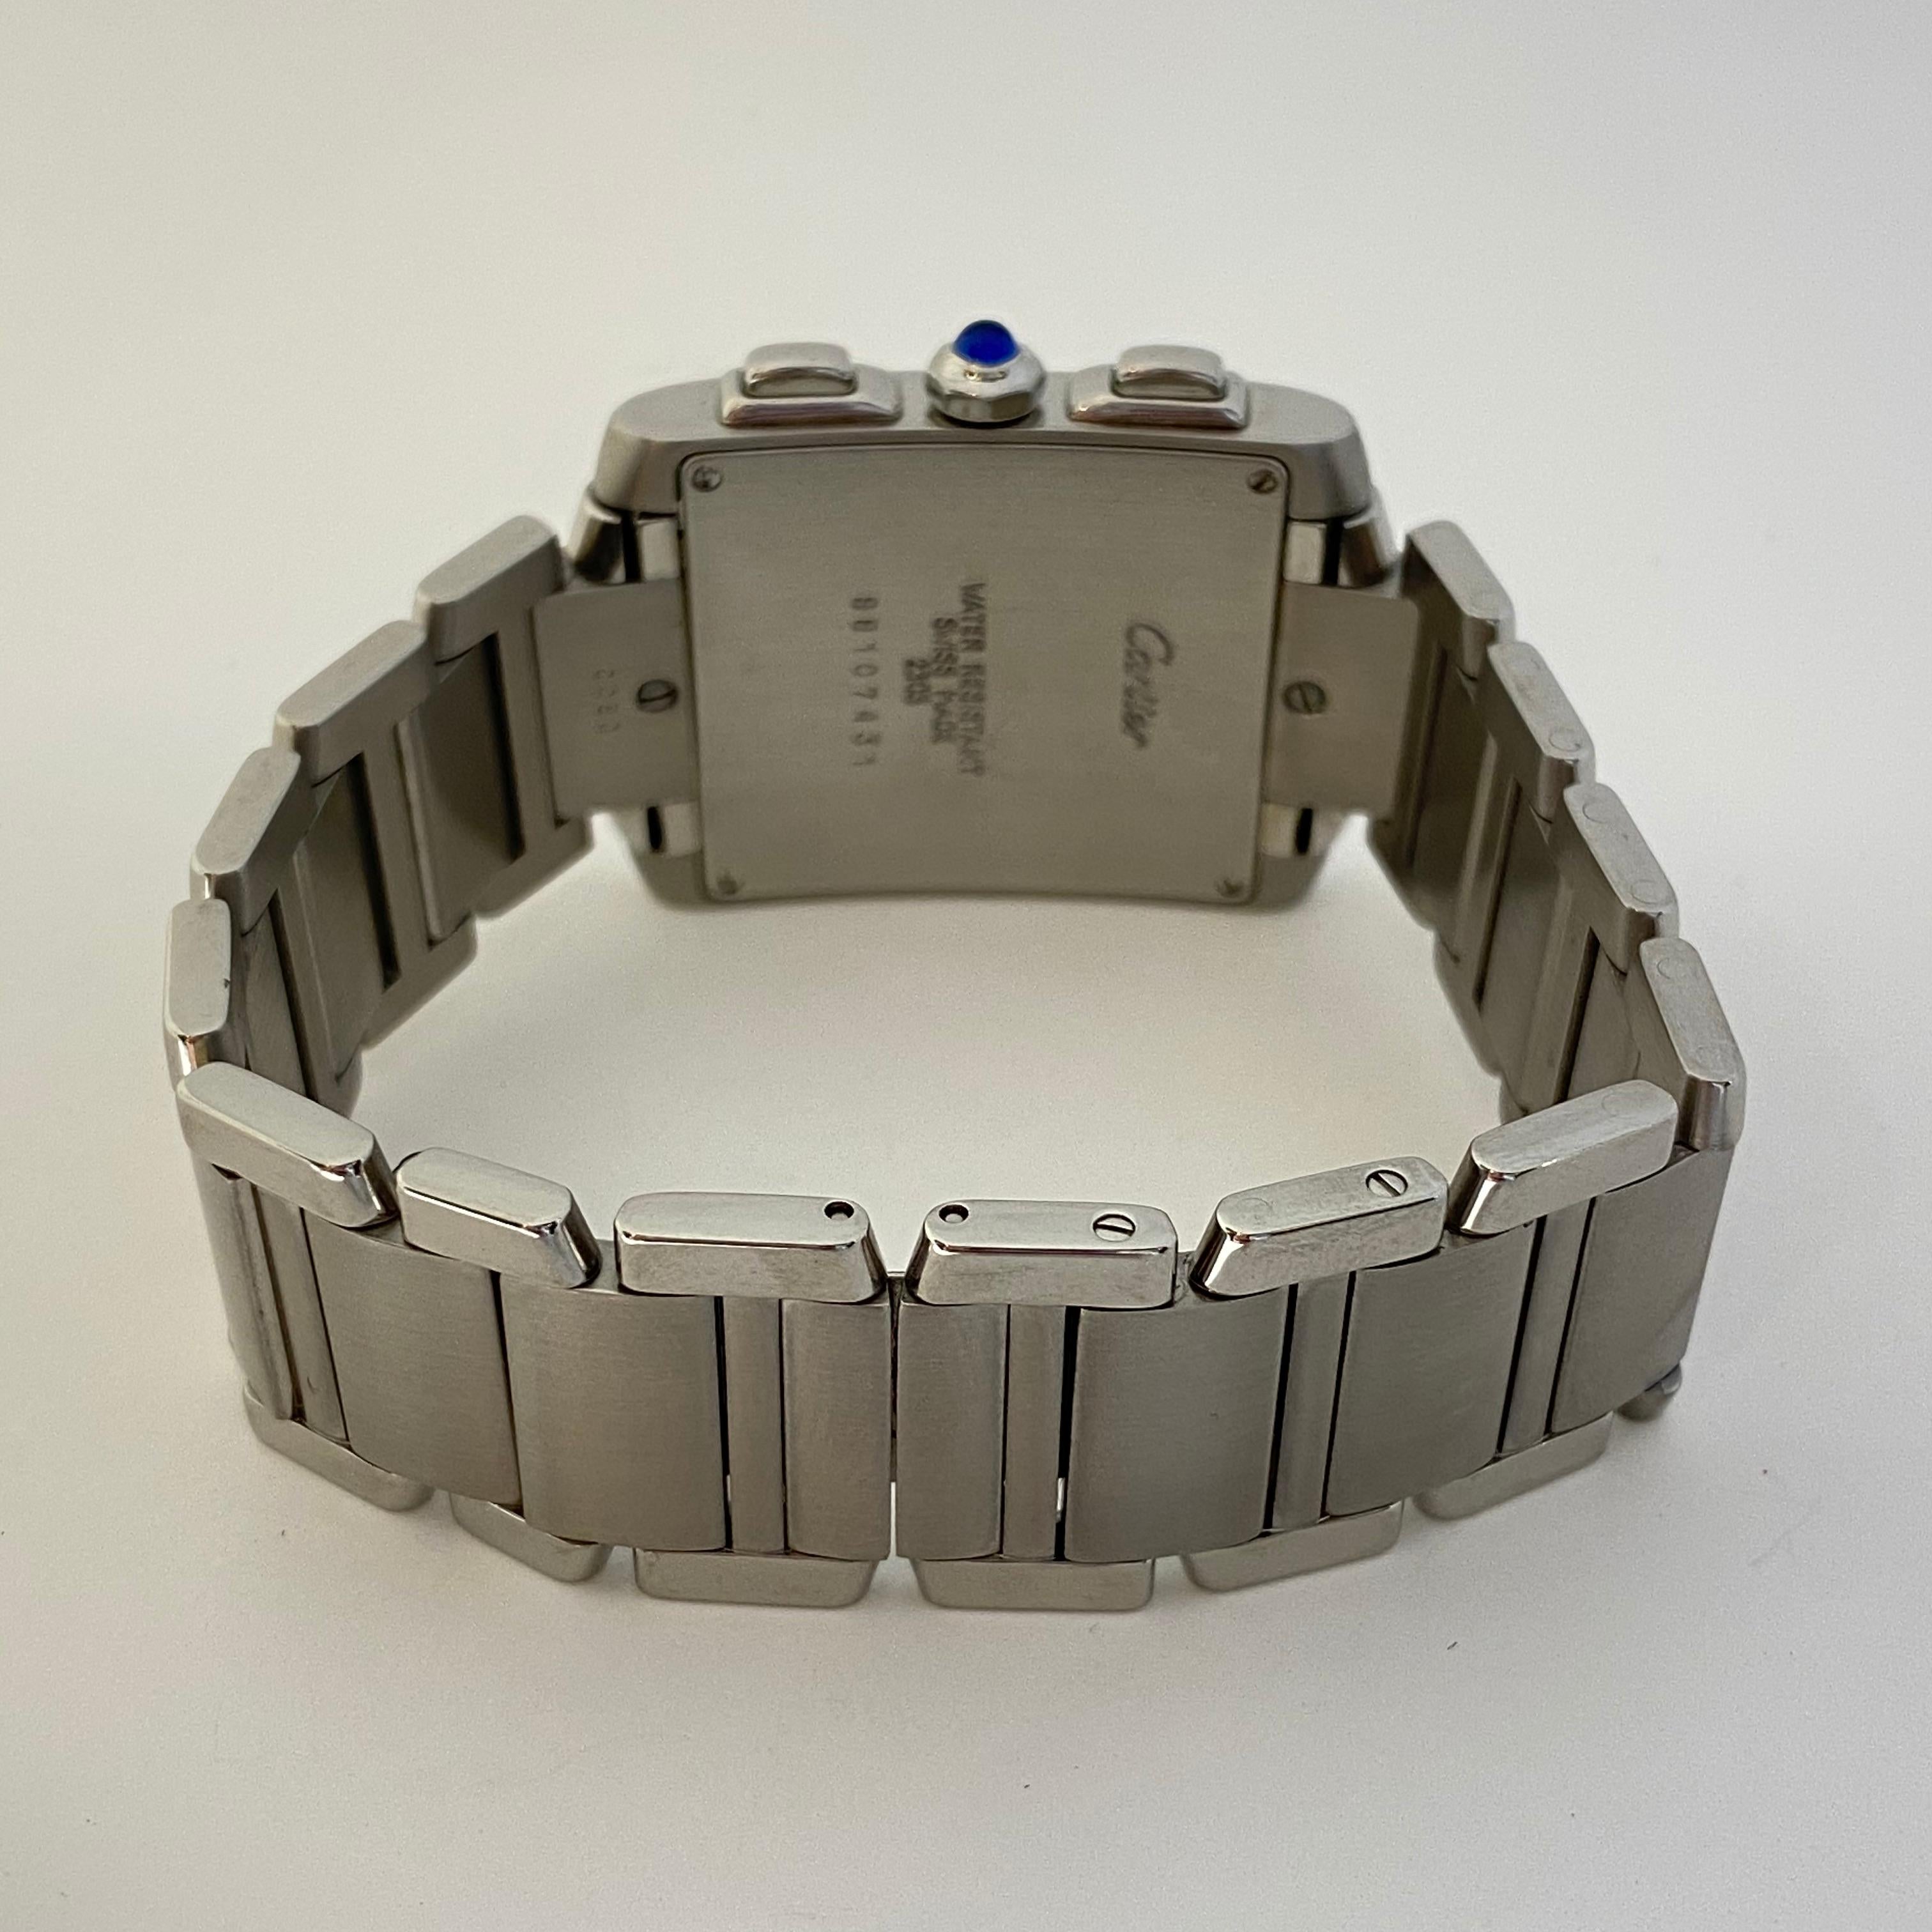 Cartier Tank Francaise d'occasion conçue en acier inoxydable. La montre est dotée d'un mouvement à pile, de trois sous-cadrans, d'une couronne en cabochon bleu, de deux boutons-poussoirs, d'un bracelet à maillons et d'un fermoir déployant double